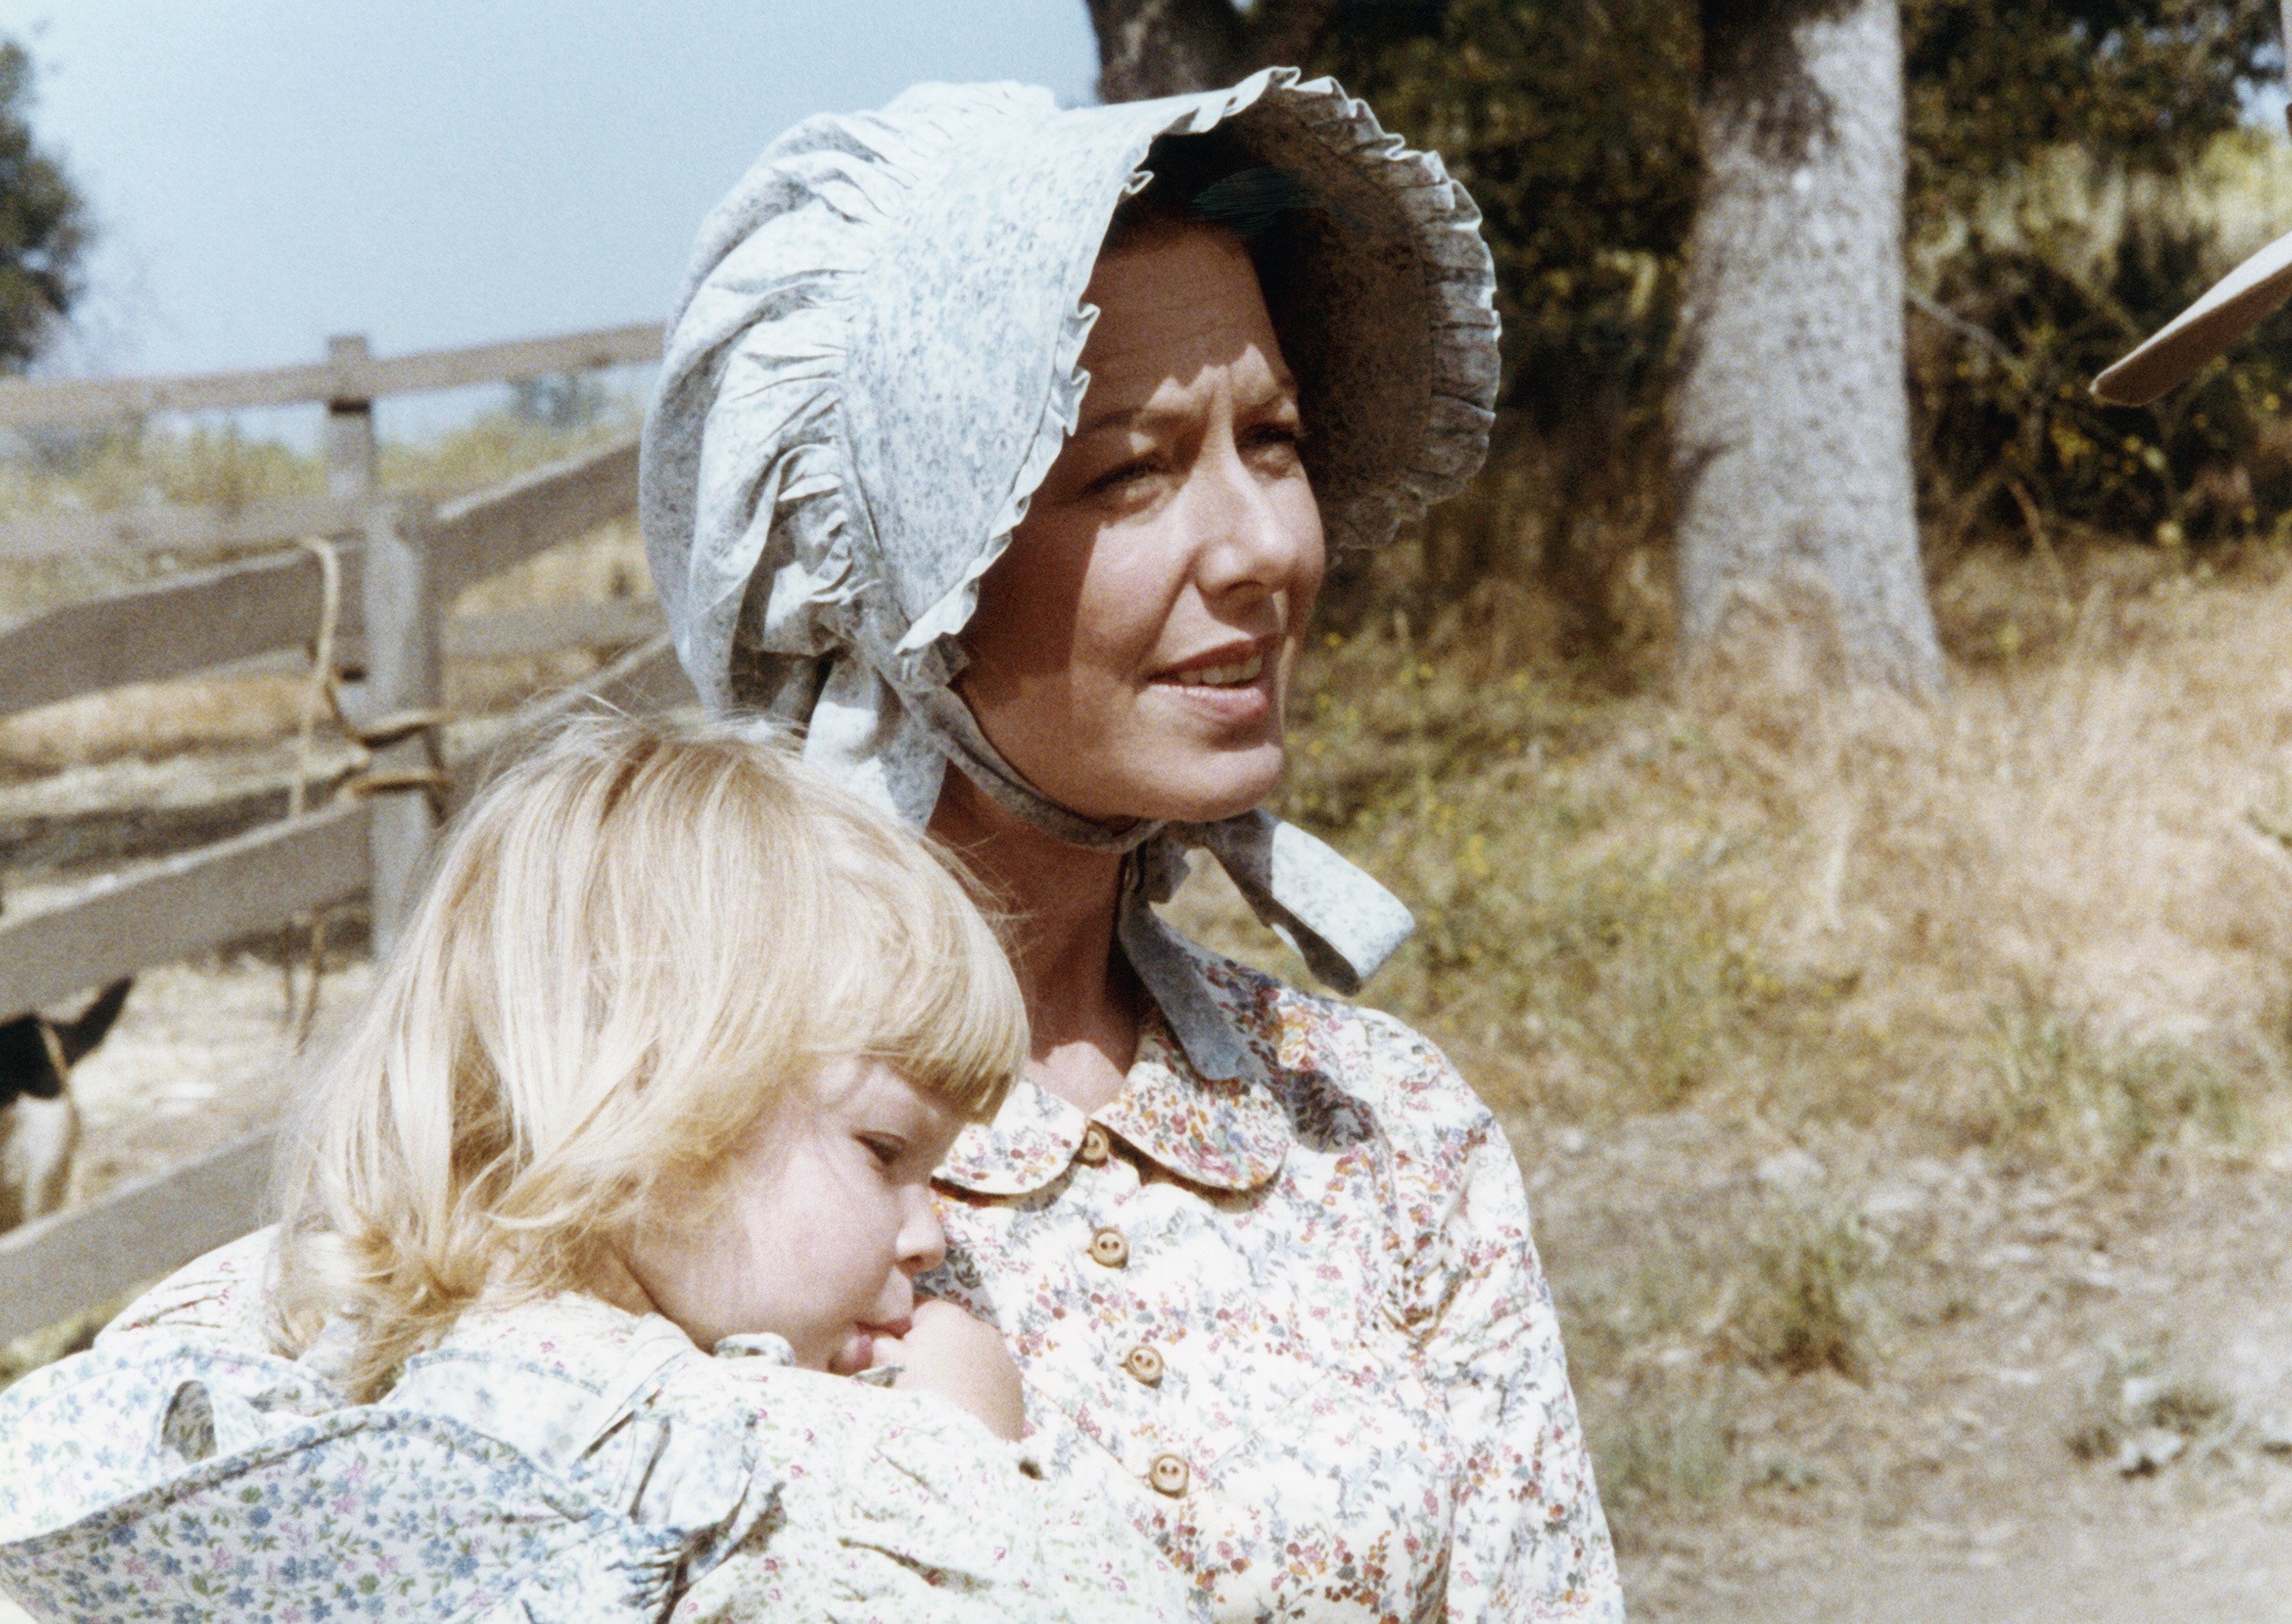 Brenda/Wendi Turnbaugh and Karen Grassle of 'Little House on the Prairie'